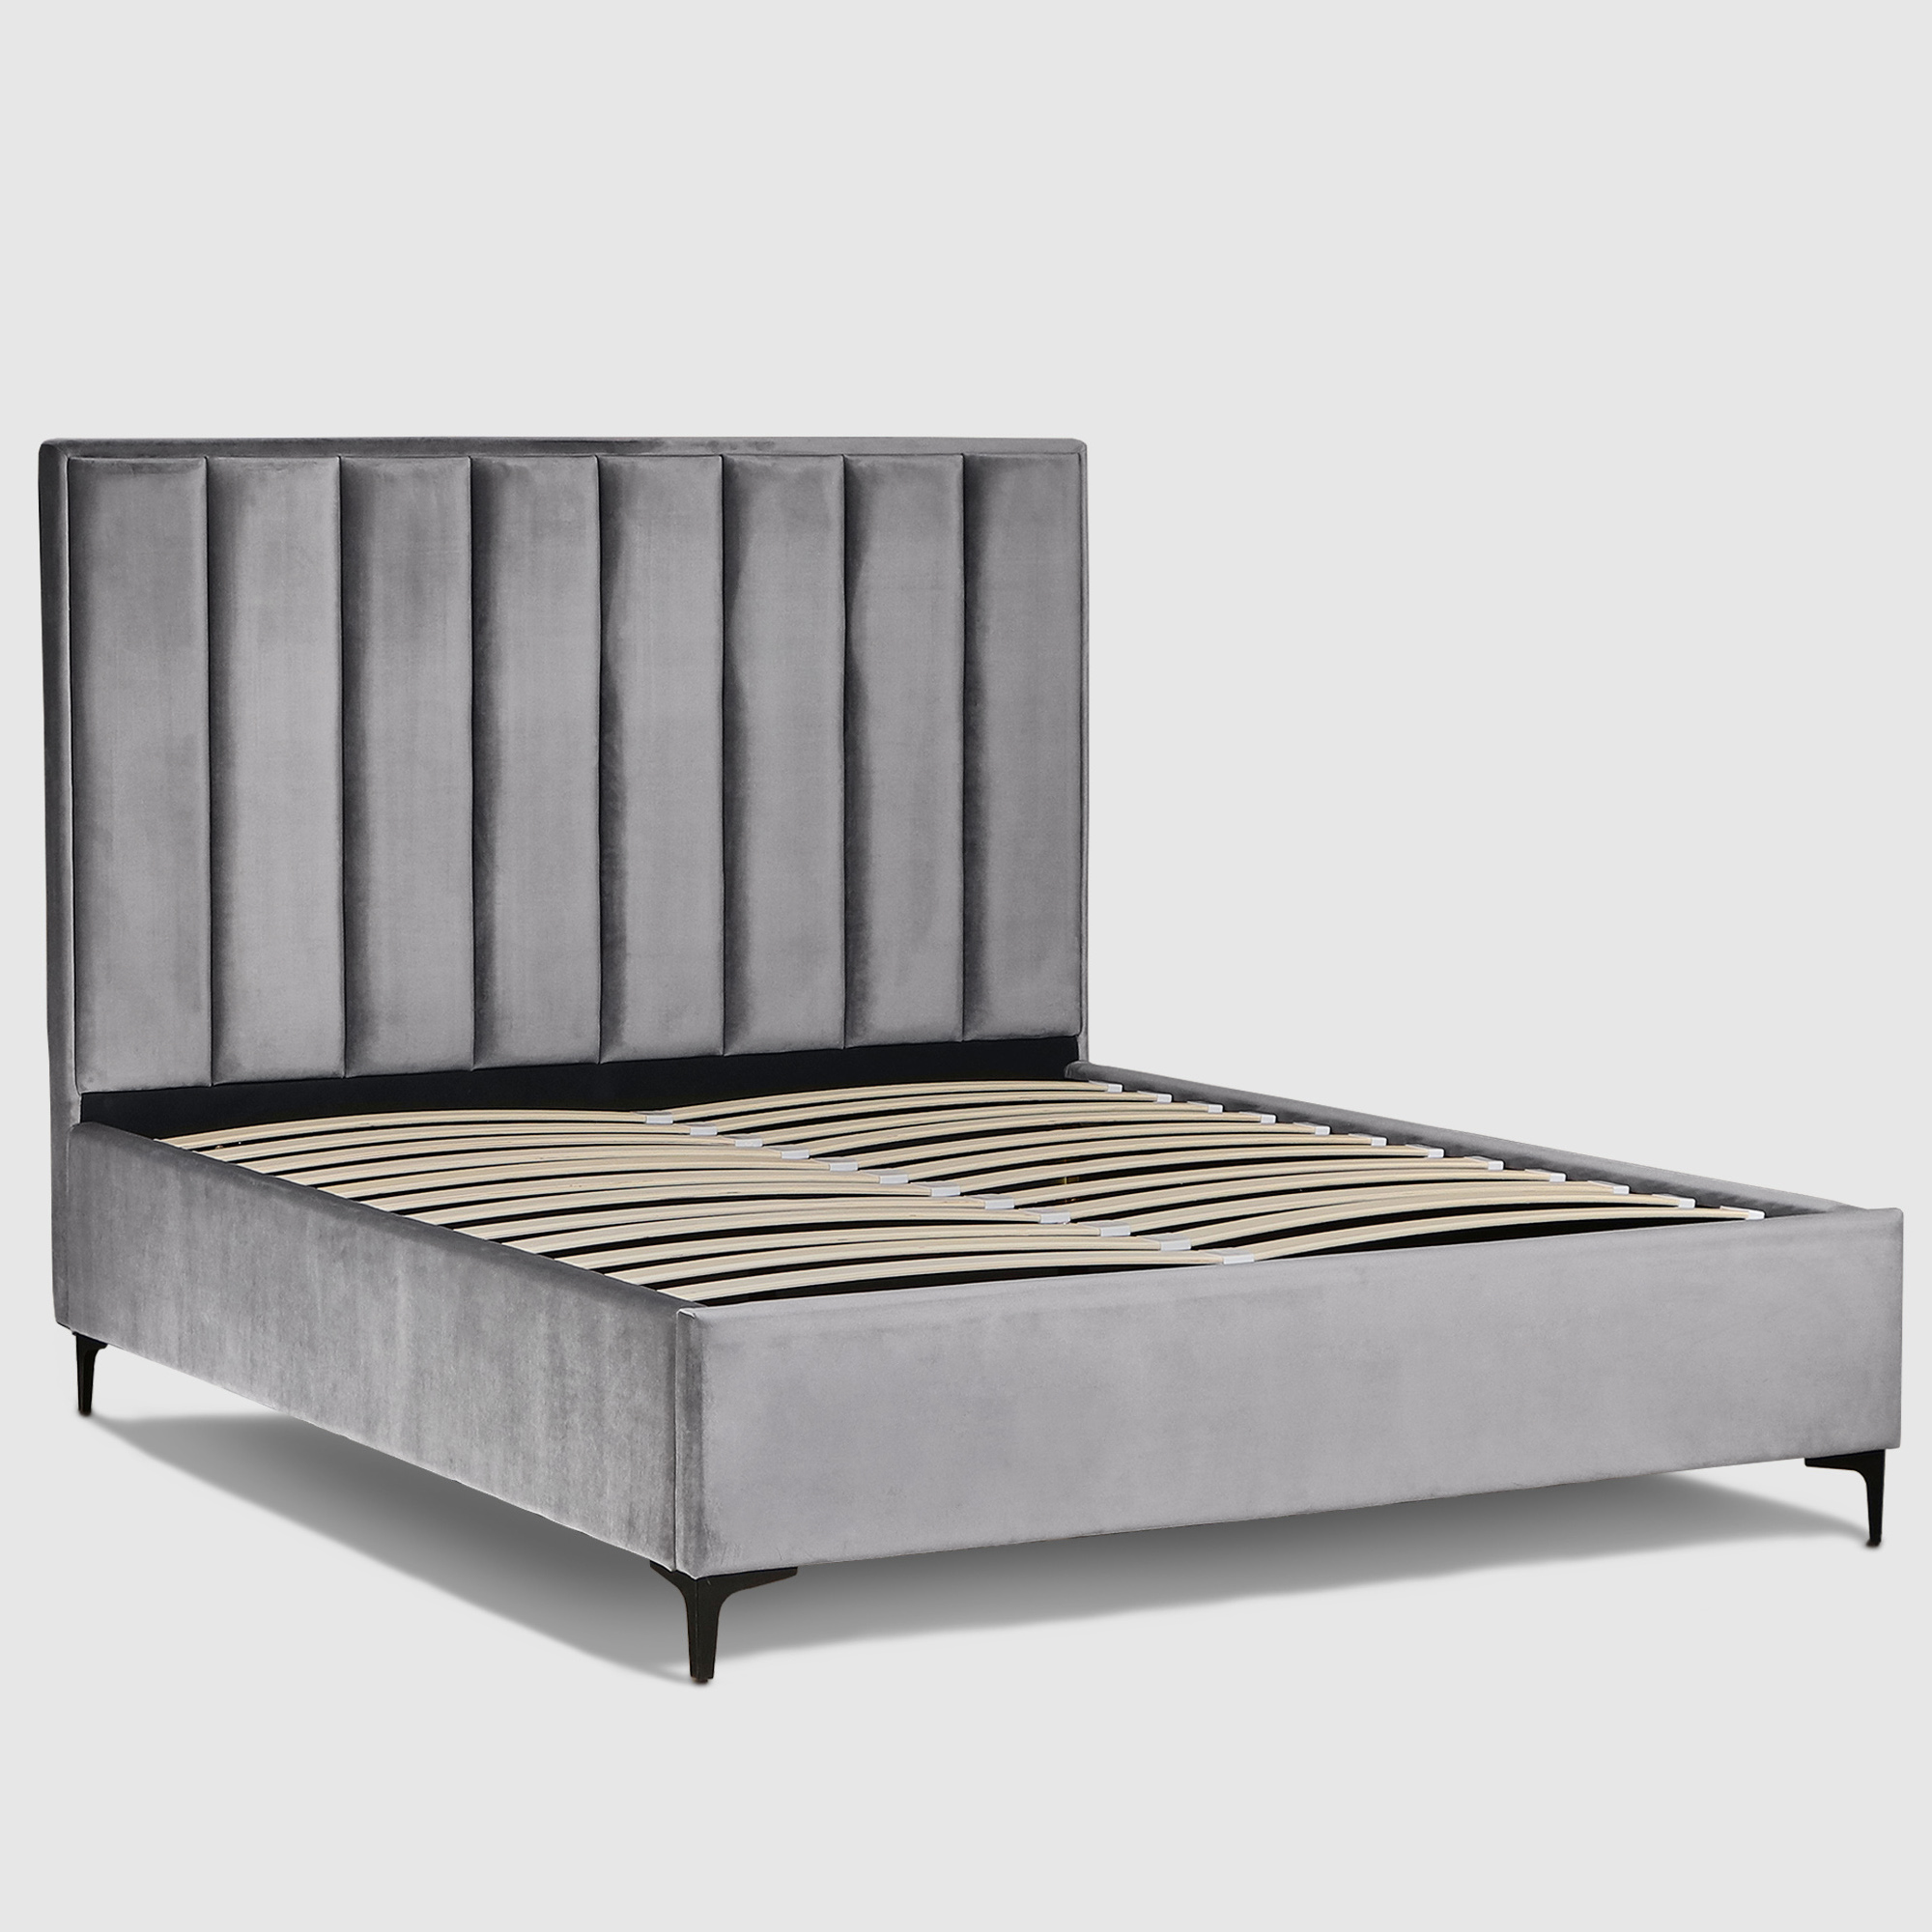 Кровать двуспальная AHF Аврора с подъемным механизмом 160x200см серая, размер 160х200